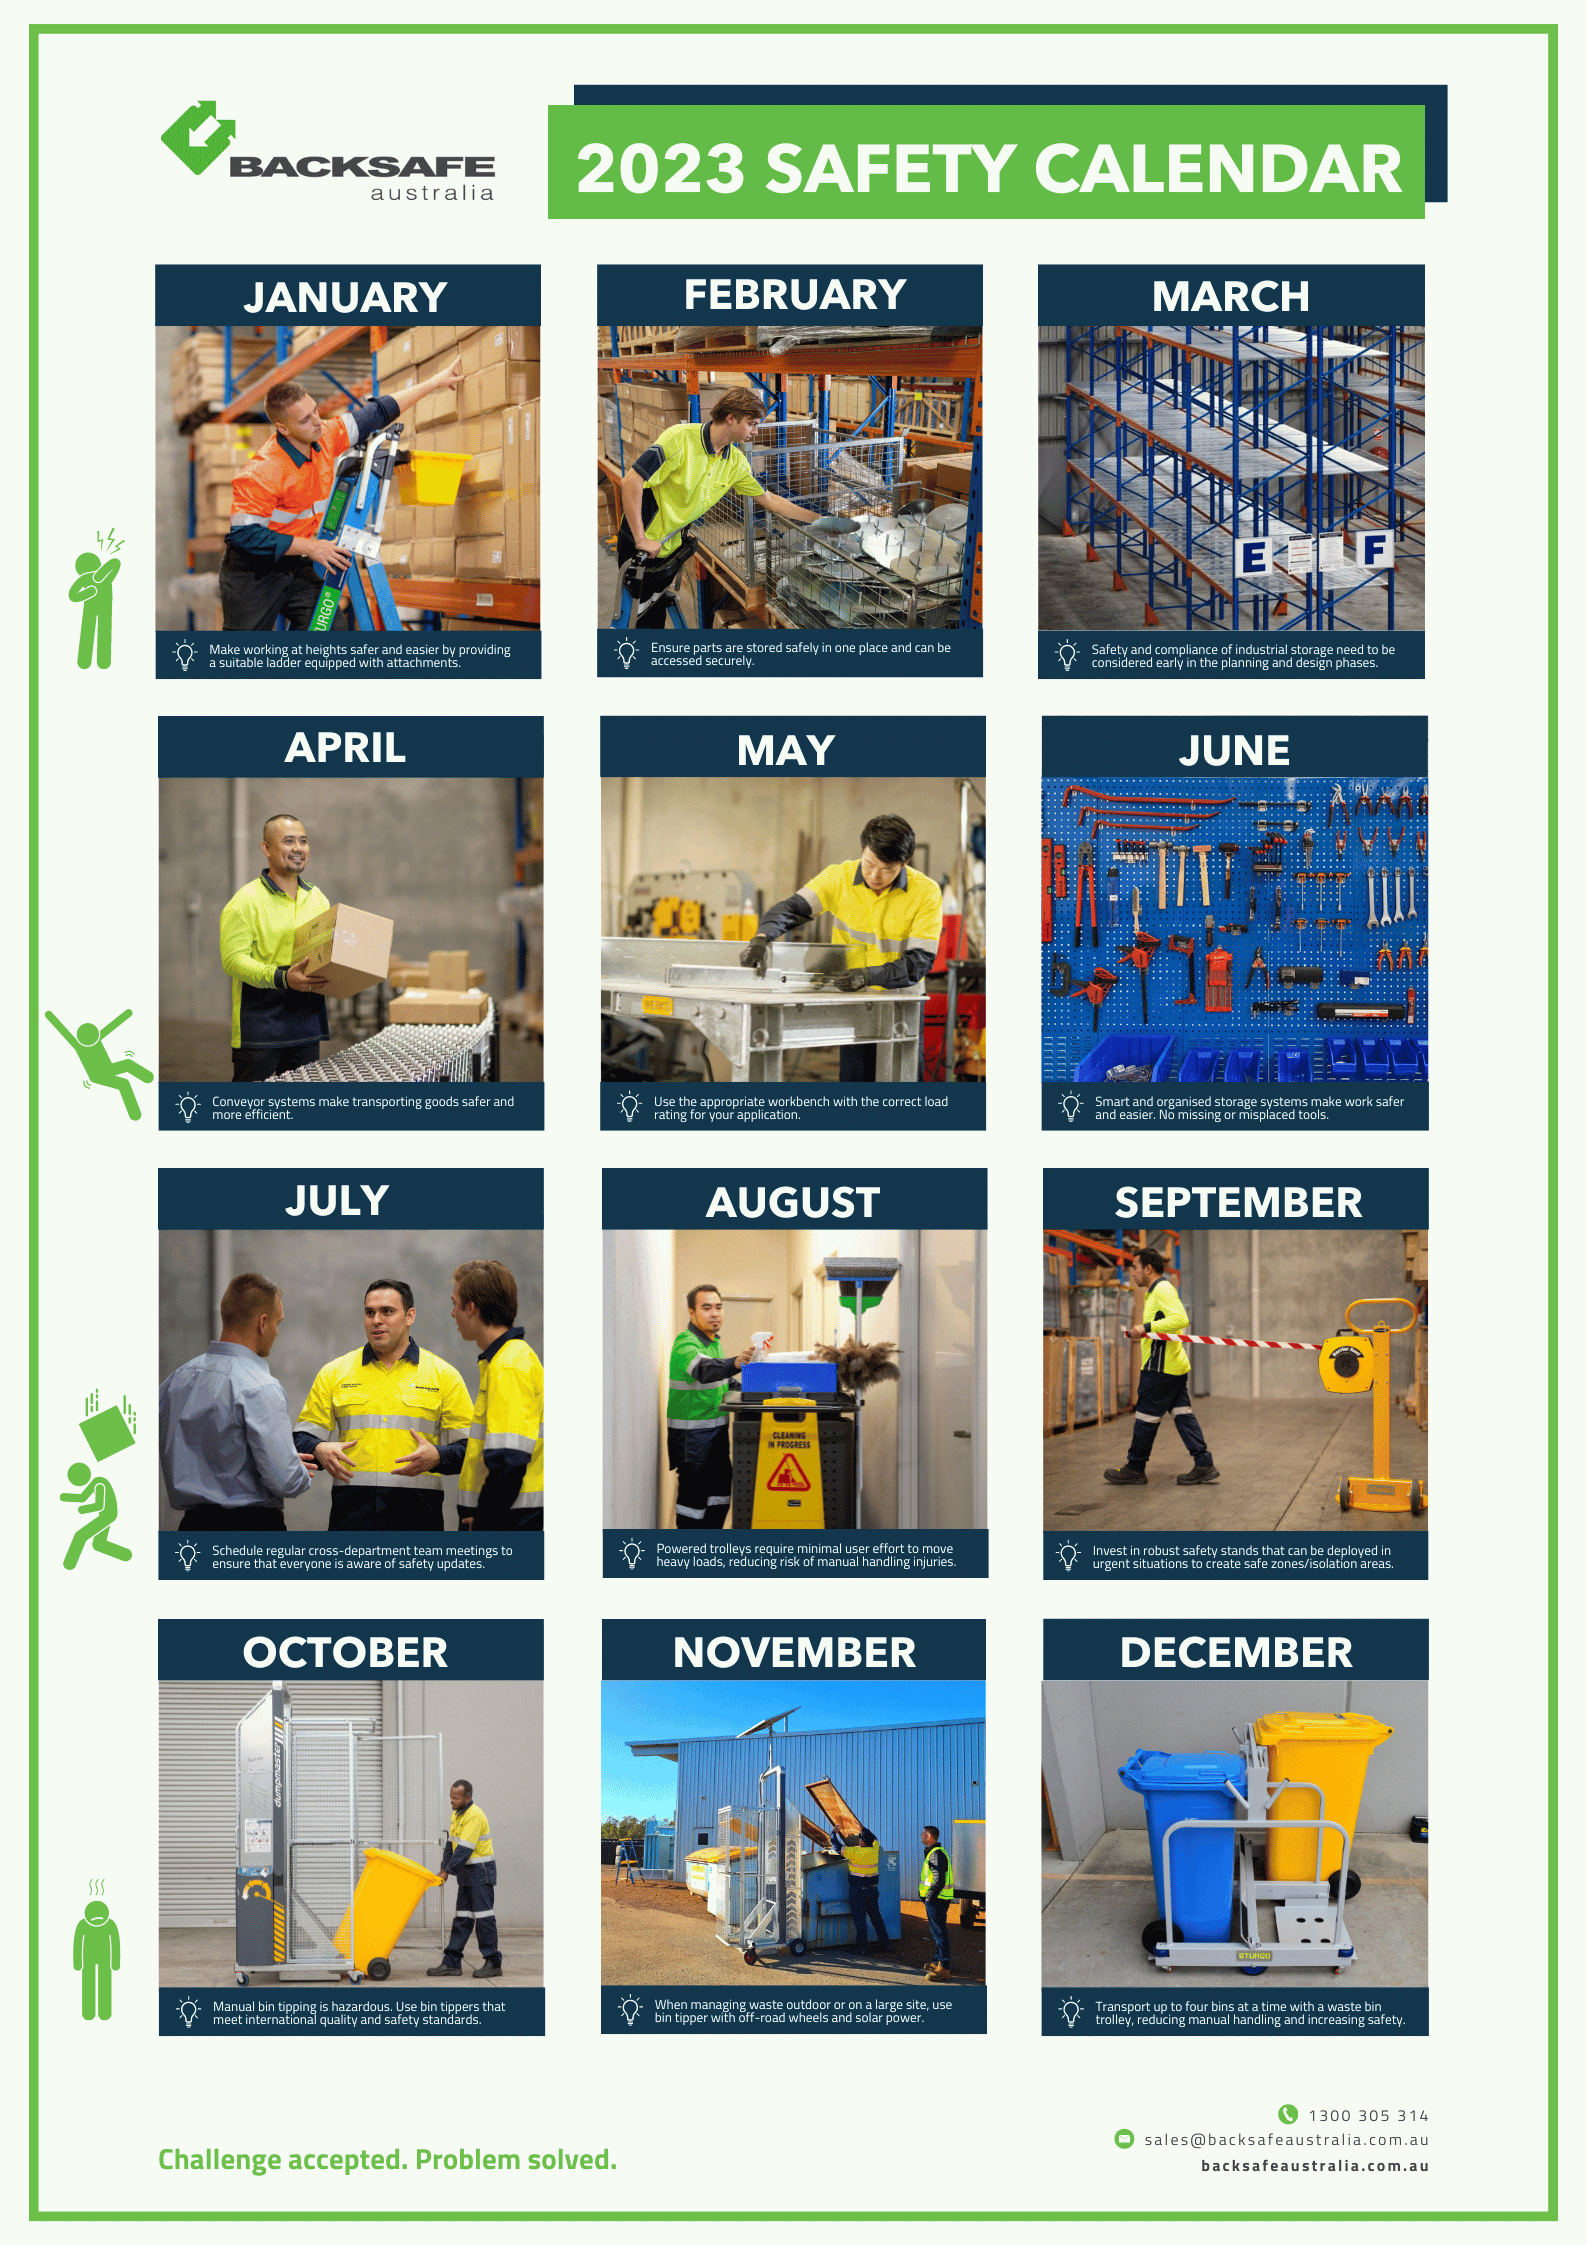 2023 Safety Calendar by Backsafe Australia-1